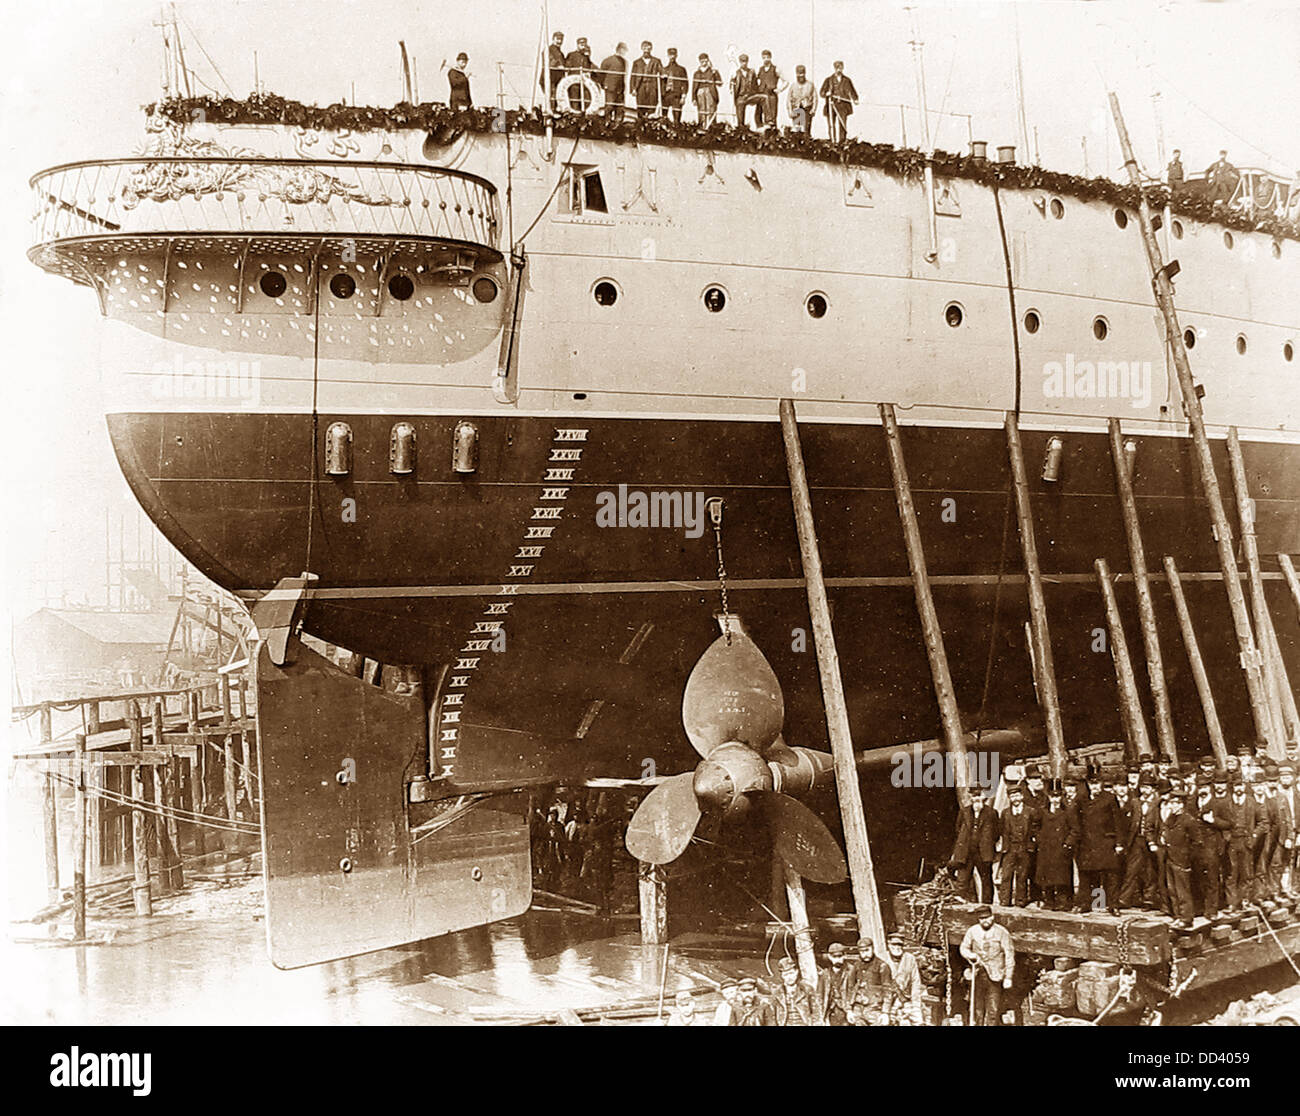 Thames Ironworks et Shipbuilding Company - construire un navire de l'époque Victorienne - la vis et le gouvernail Banque D'Images